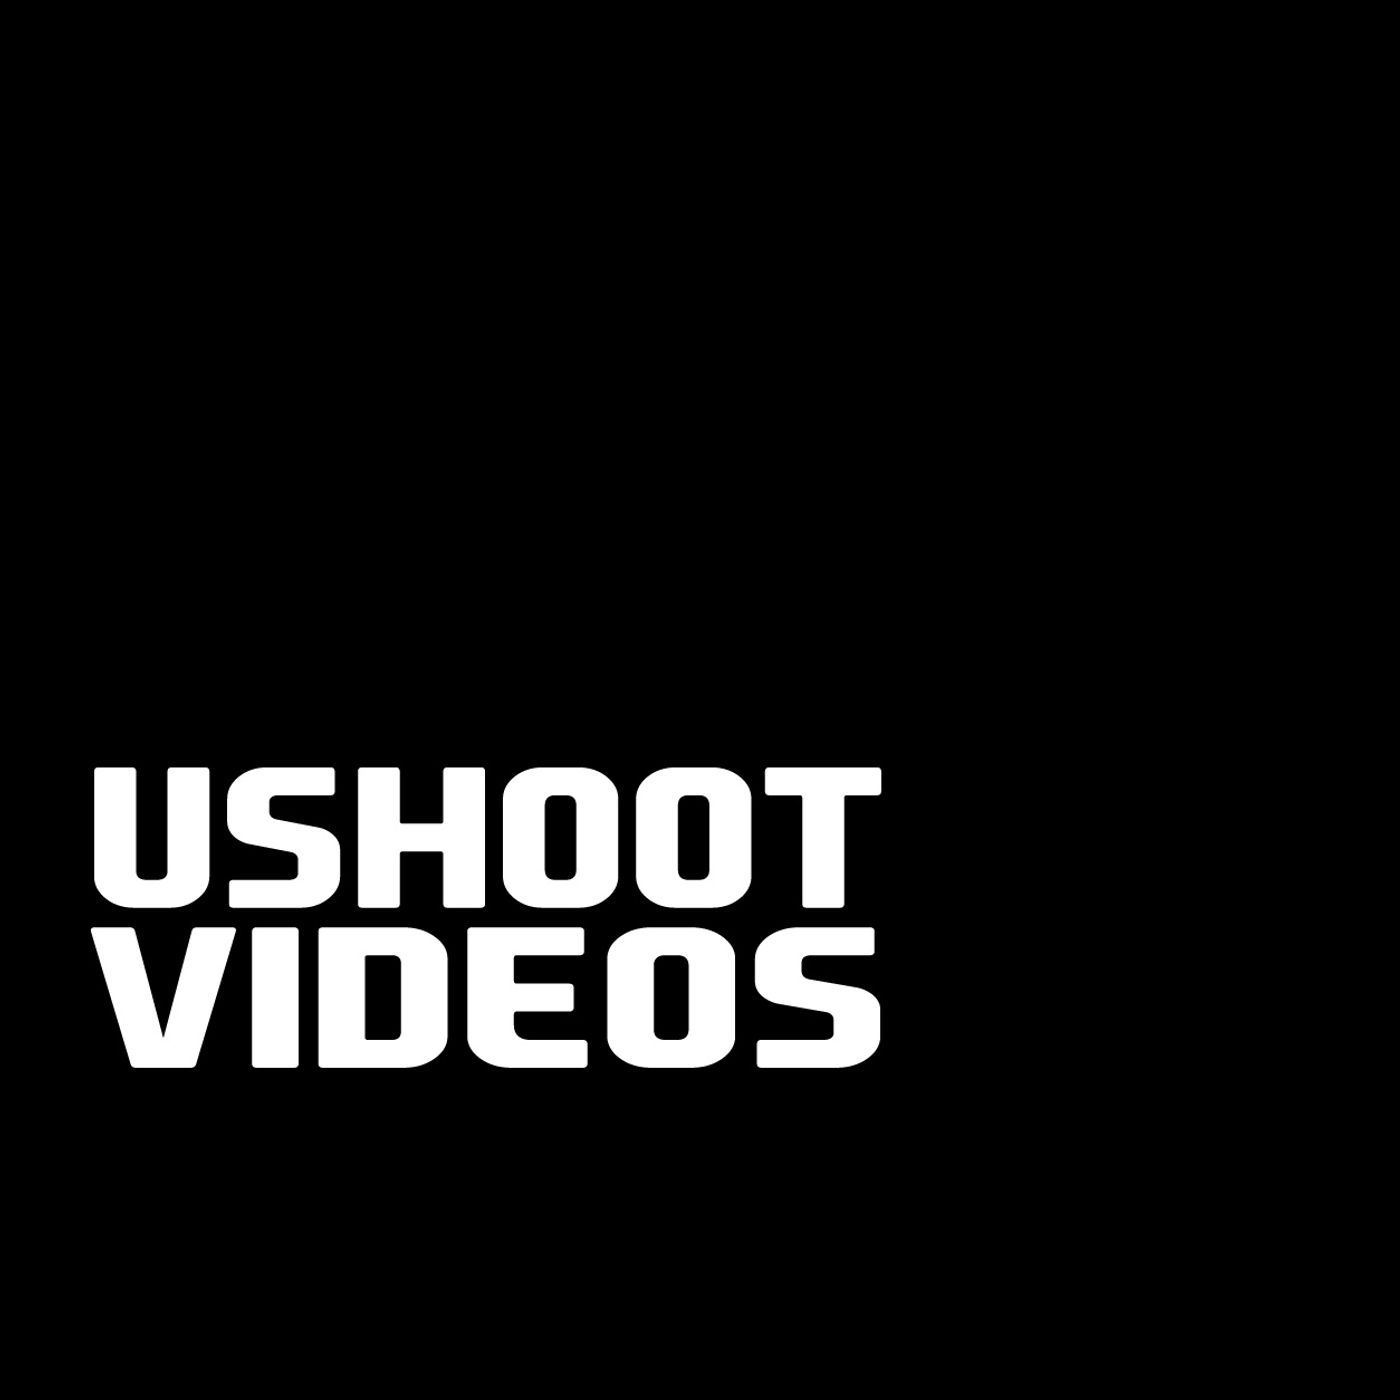 You Shoot Videos?